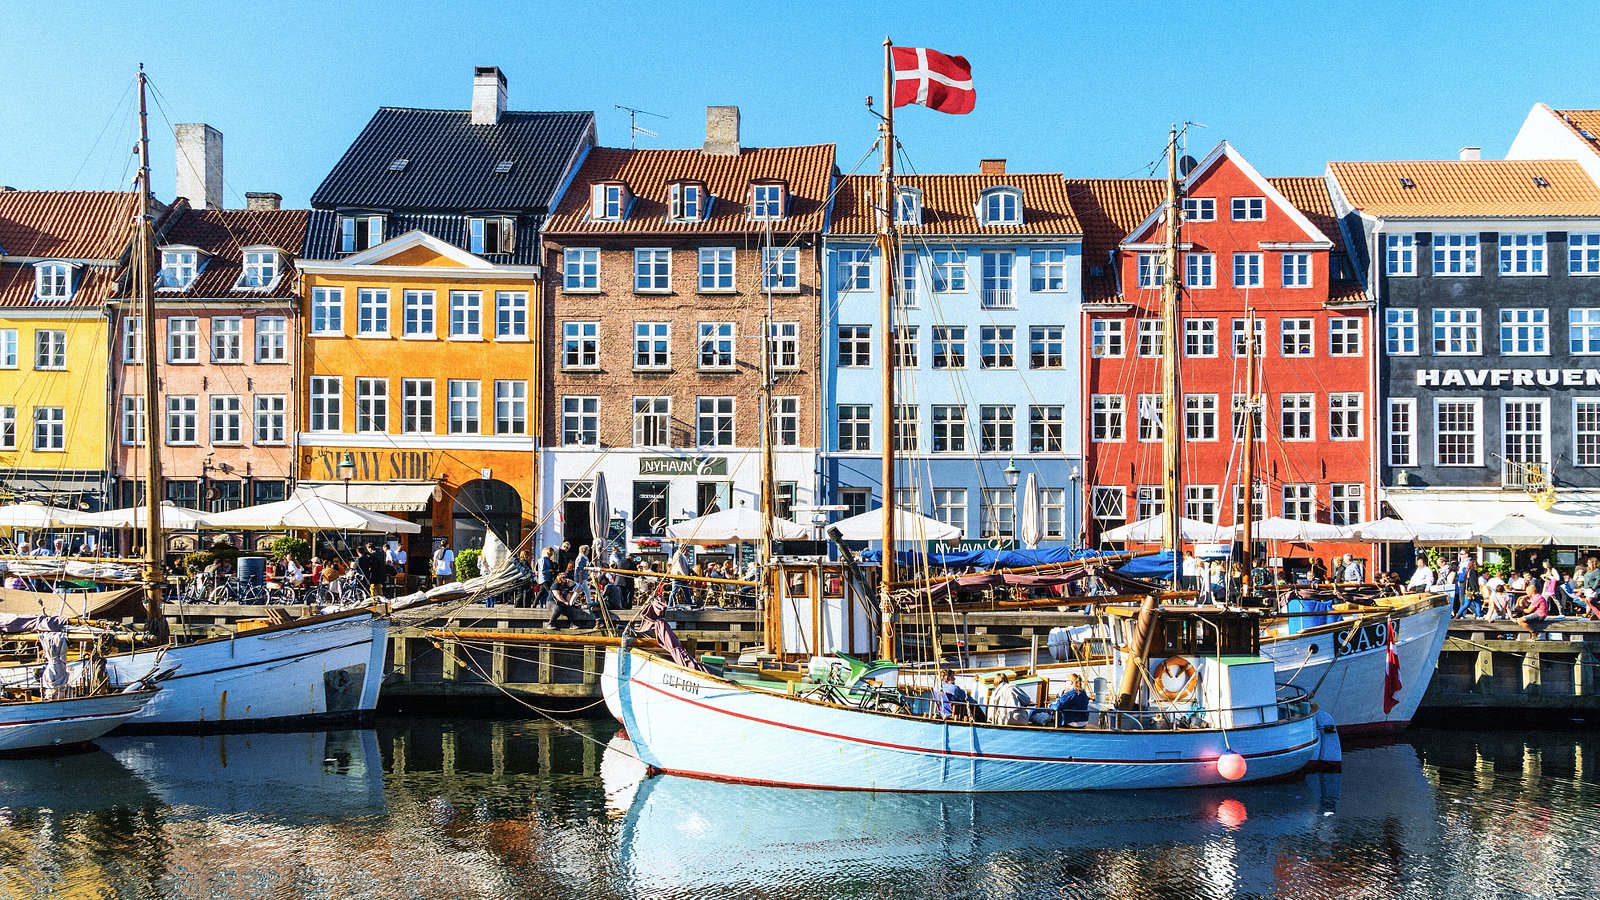 Den sandsynlige Snor samtale THE 10 BEST Hotels in Copenhagen for 2023 (from $38) - Tripadvisor